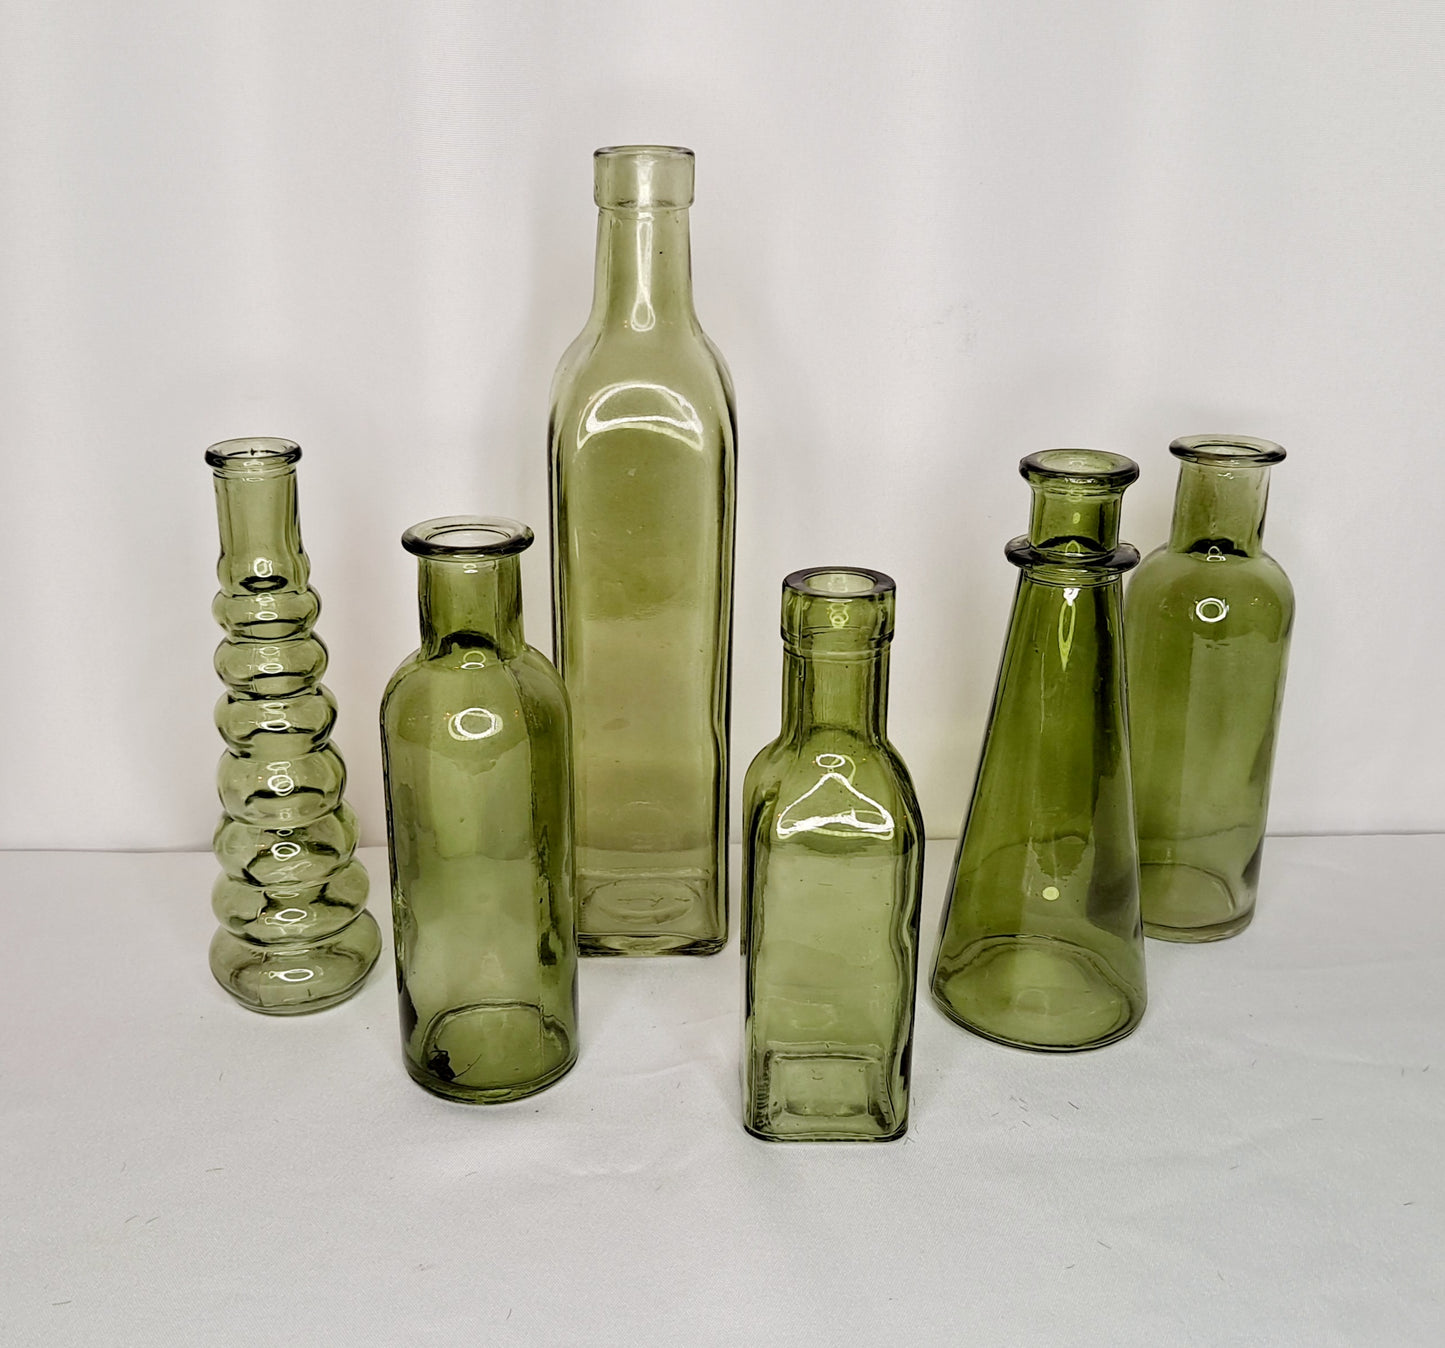 Assorted green glass bottles